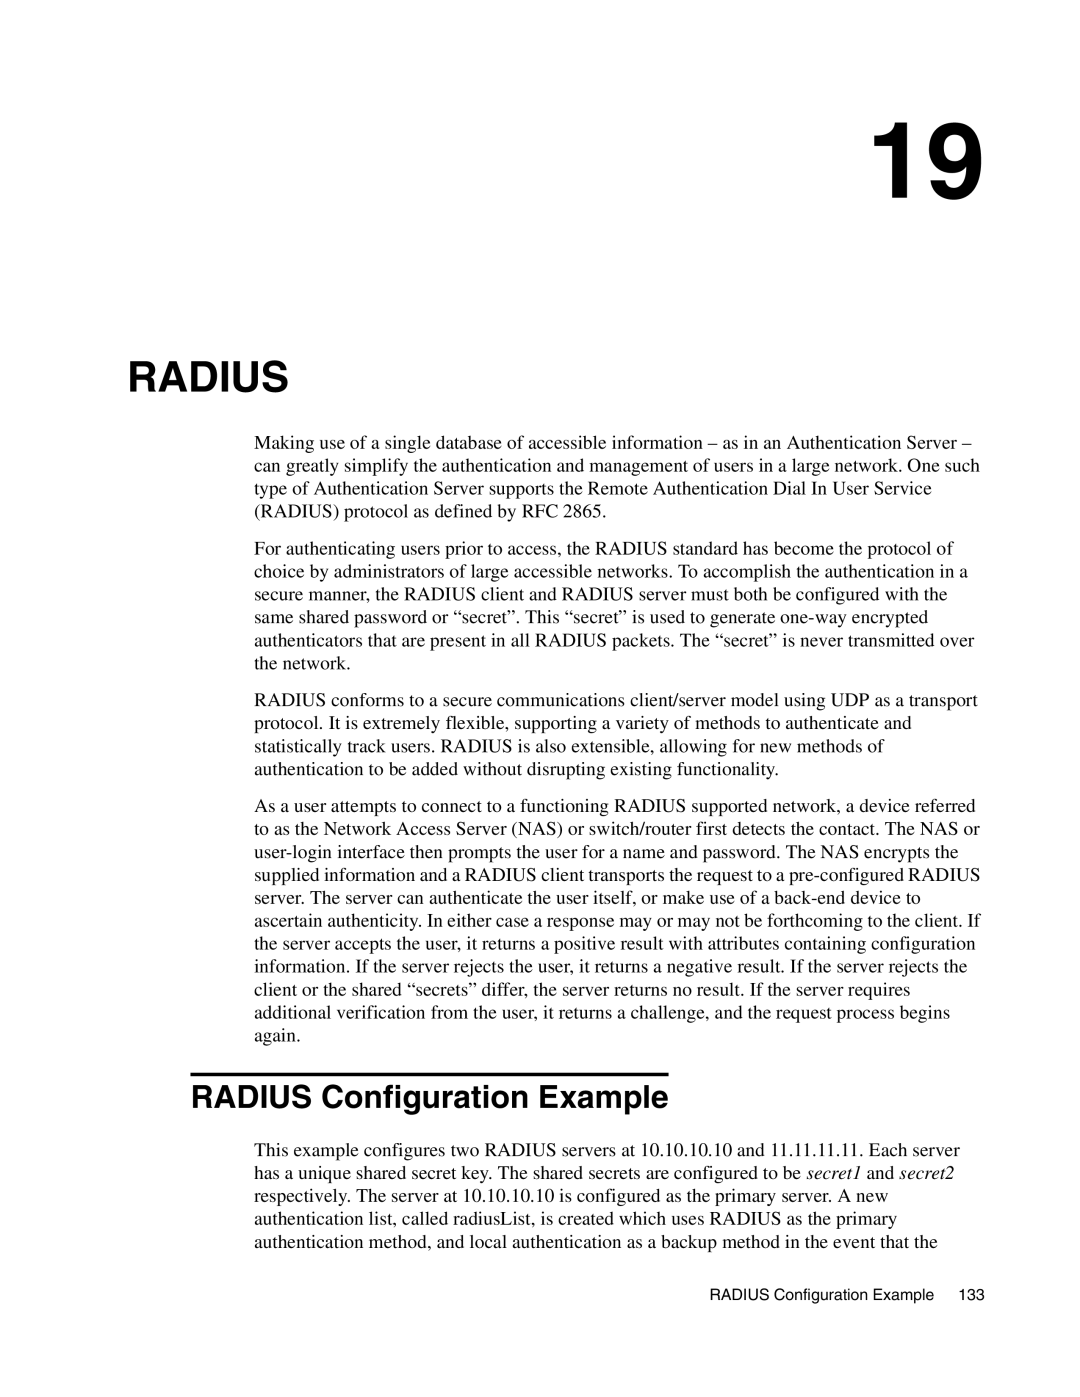 D-Link DWS-3000 manual Radius Configuration Example 